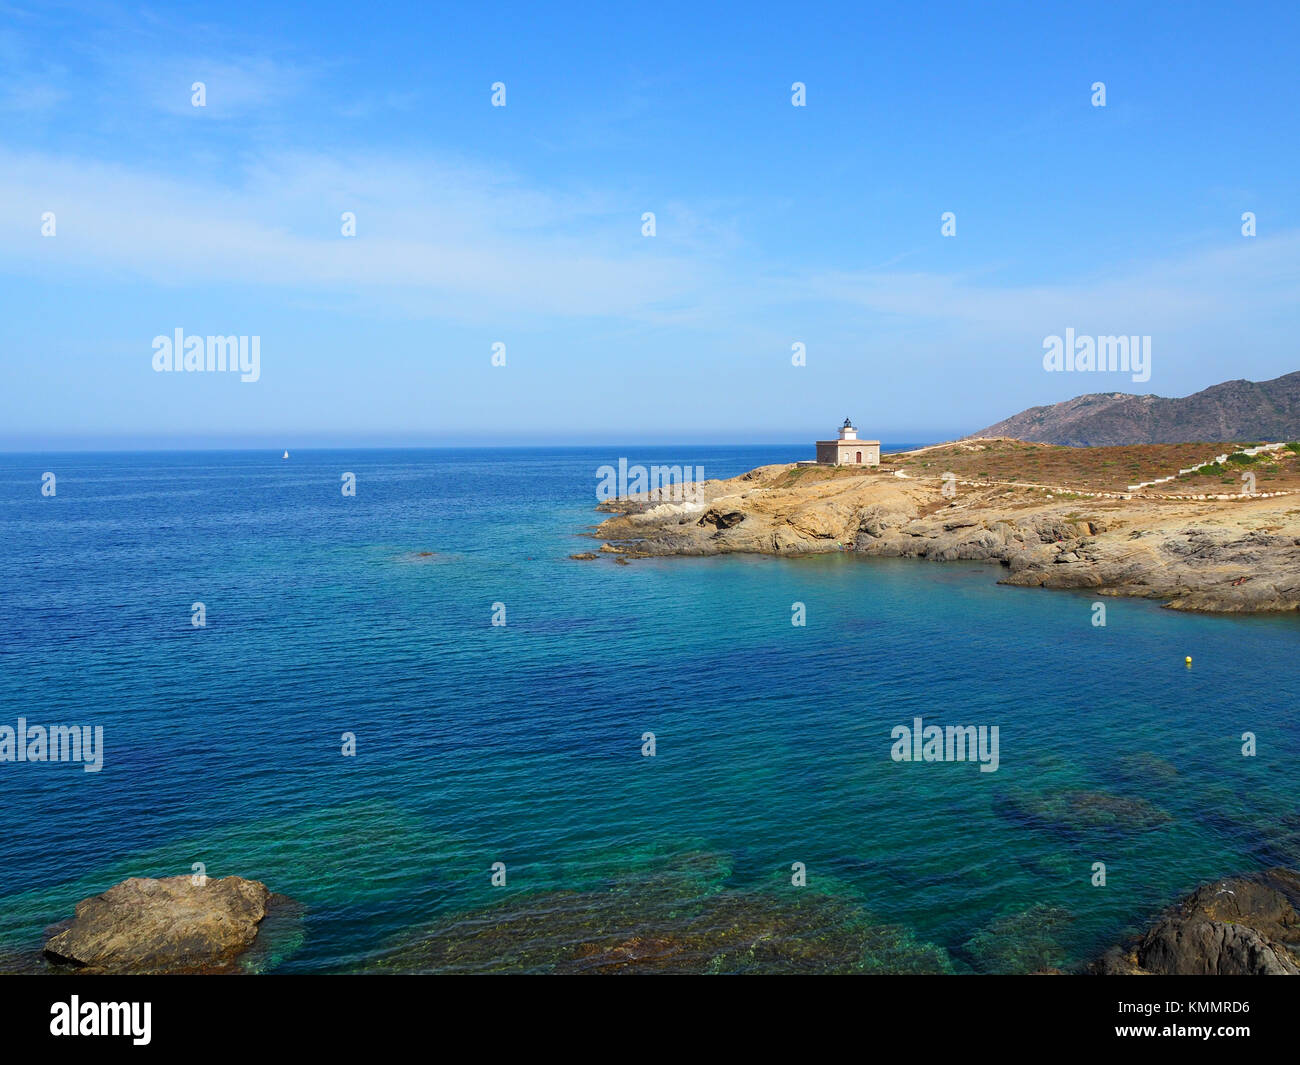 Landscape of the beaches in El Port de la Selva, Costa Brava - Girona, Spain Stock Photo